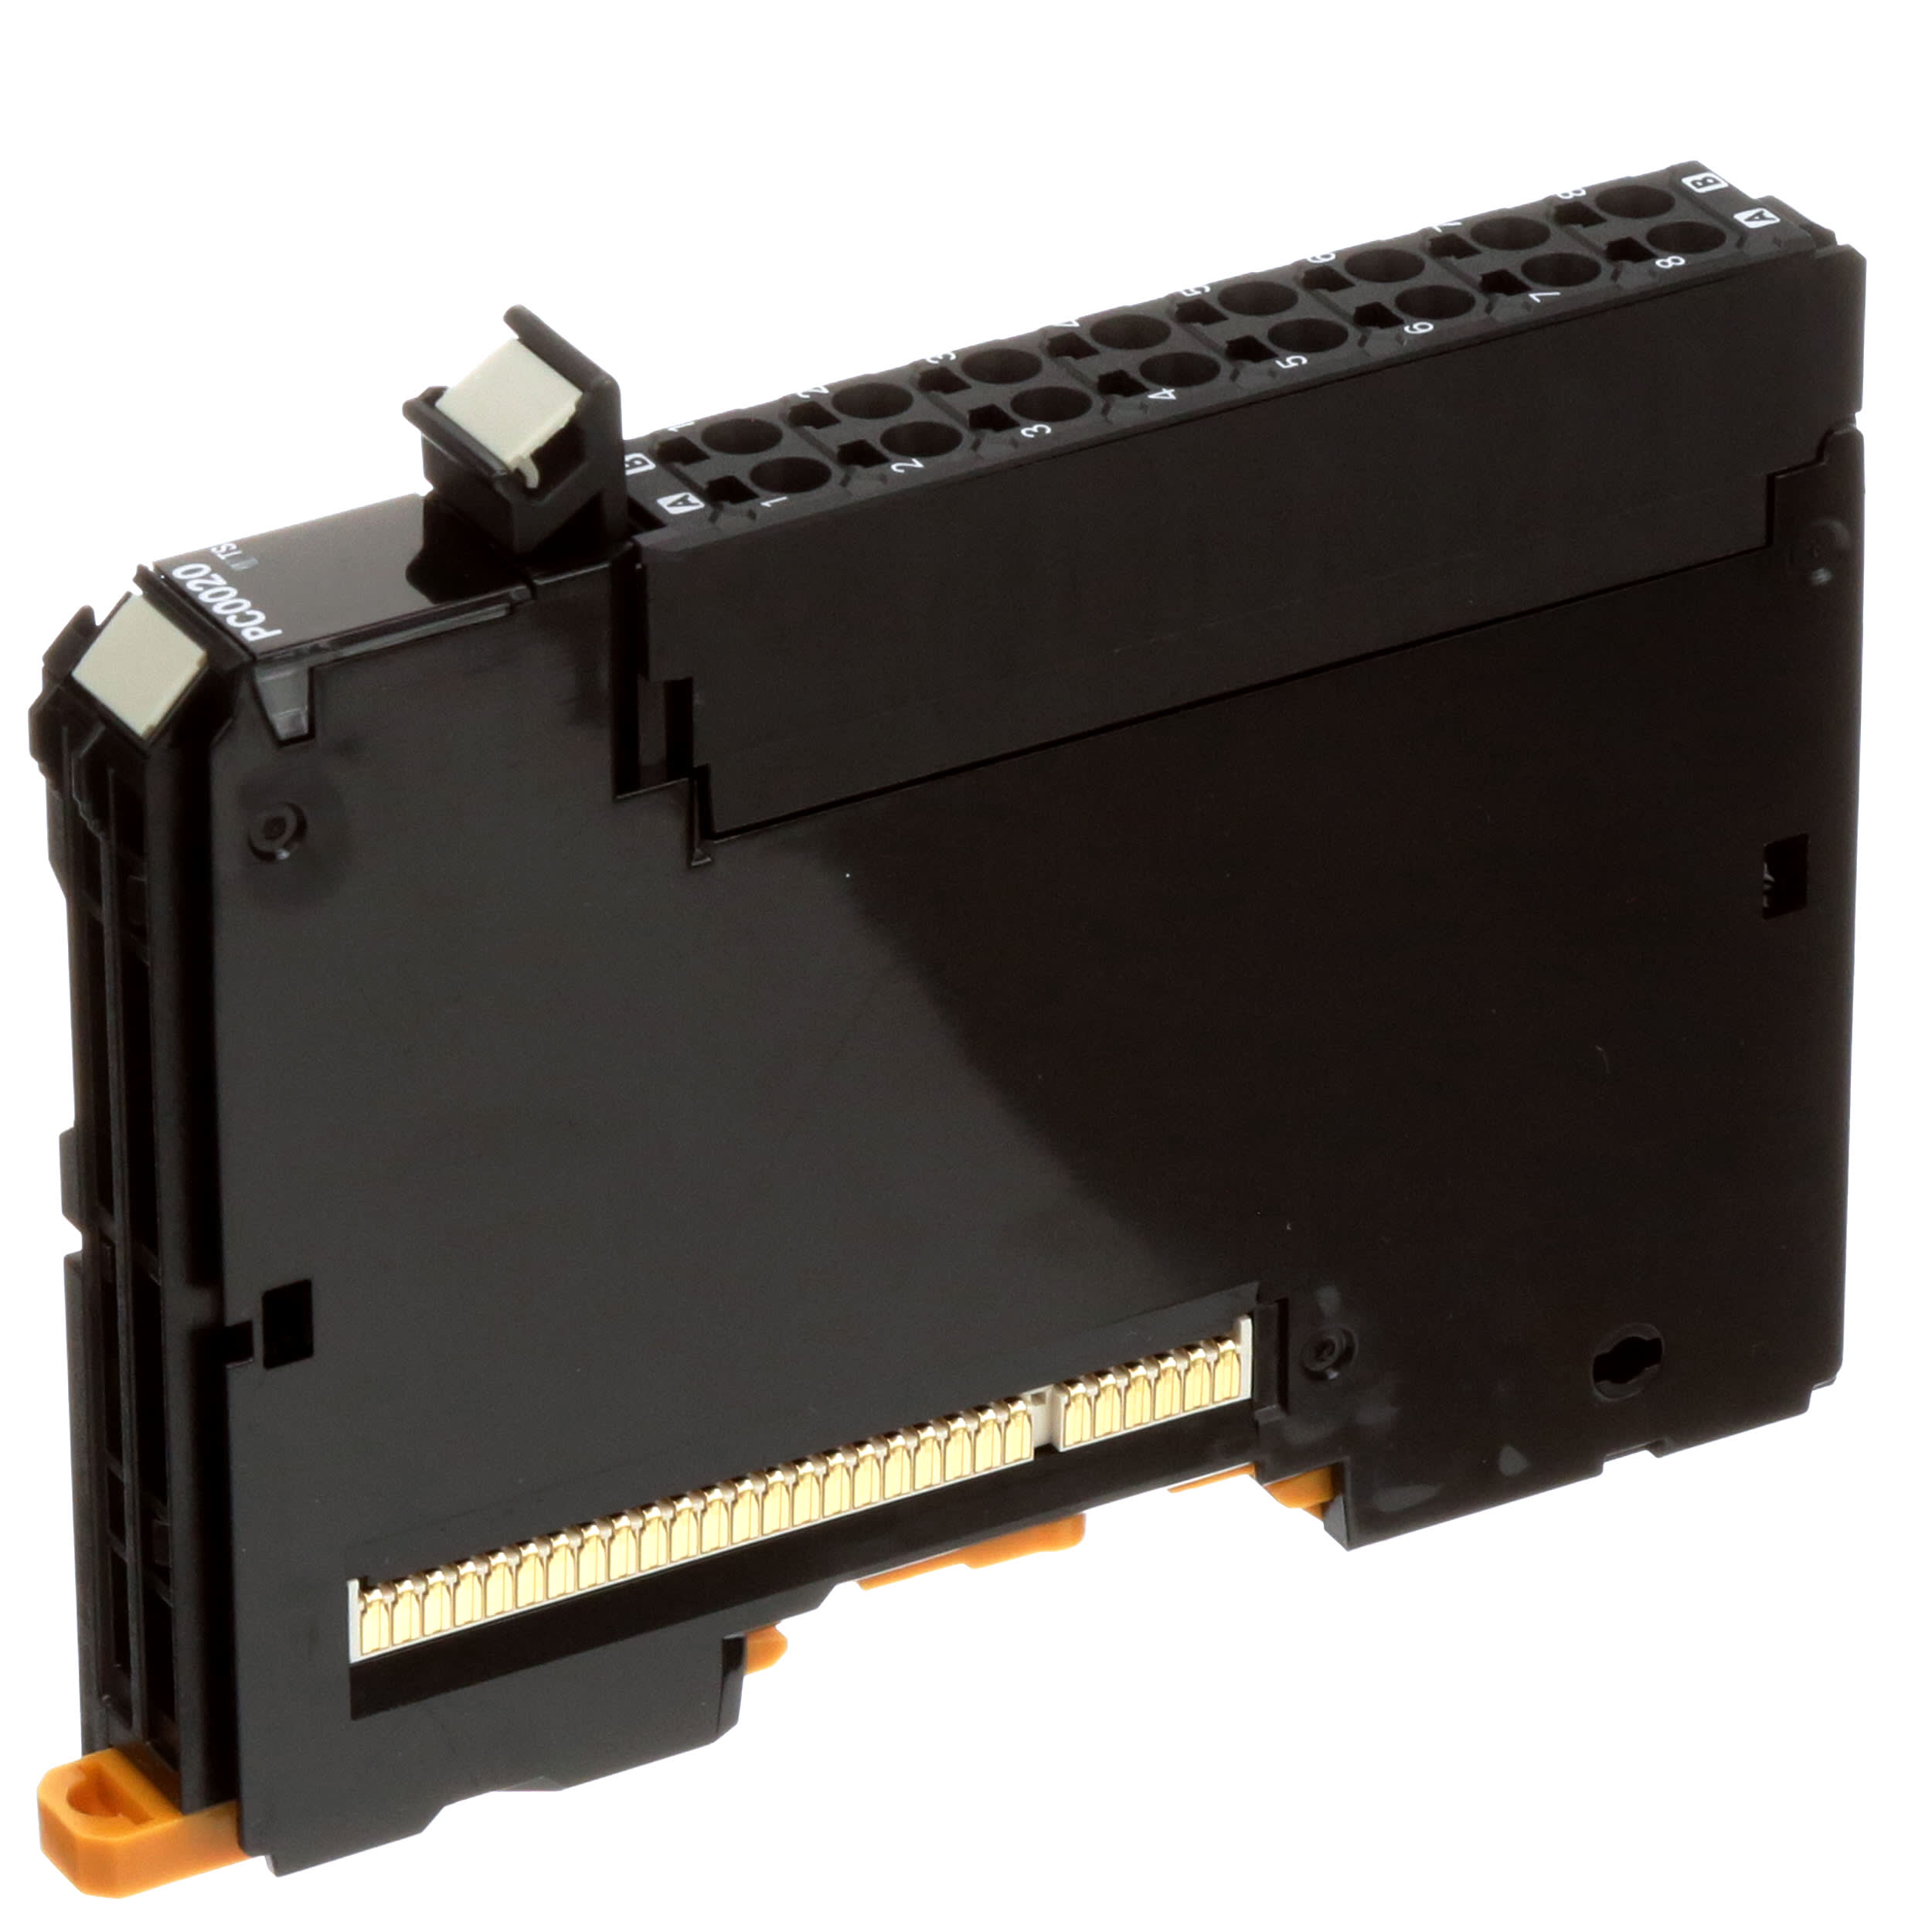 1PC OMRON NX-PF0730 PLC module NXPF0730 New In Box